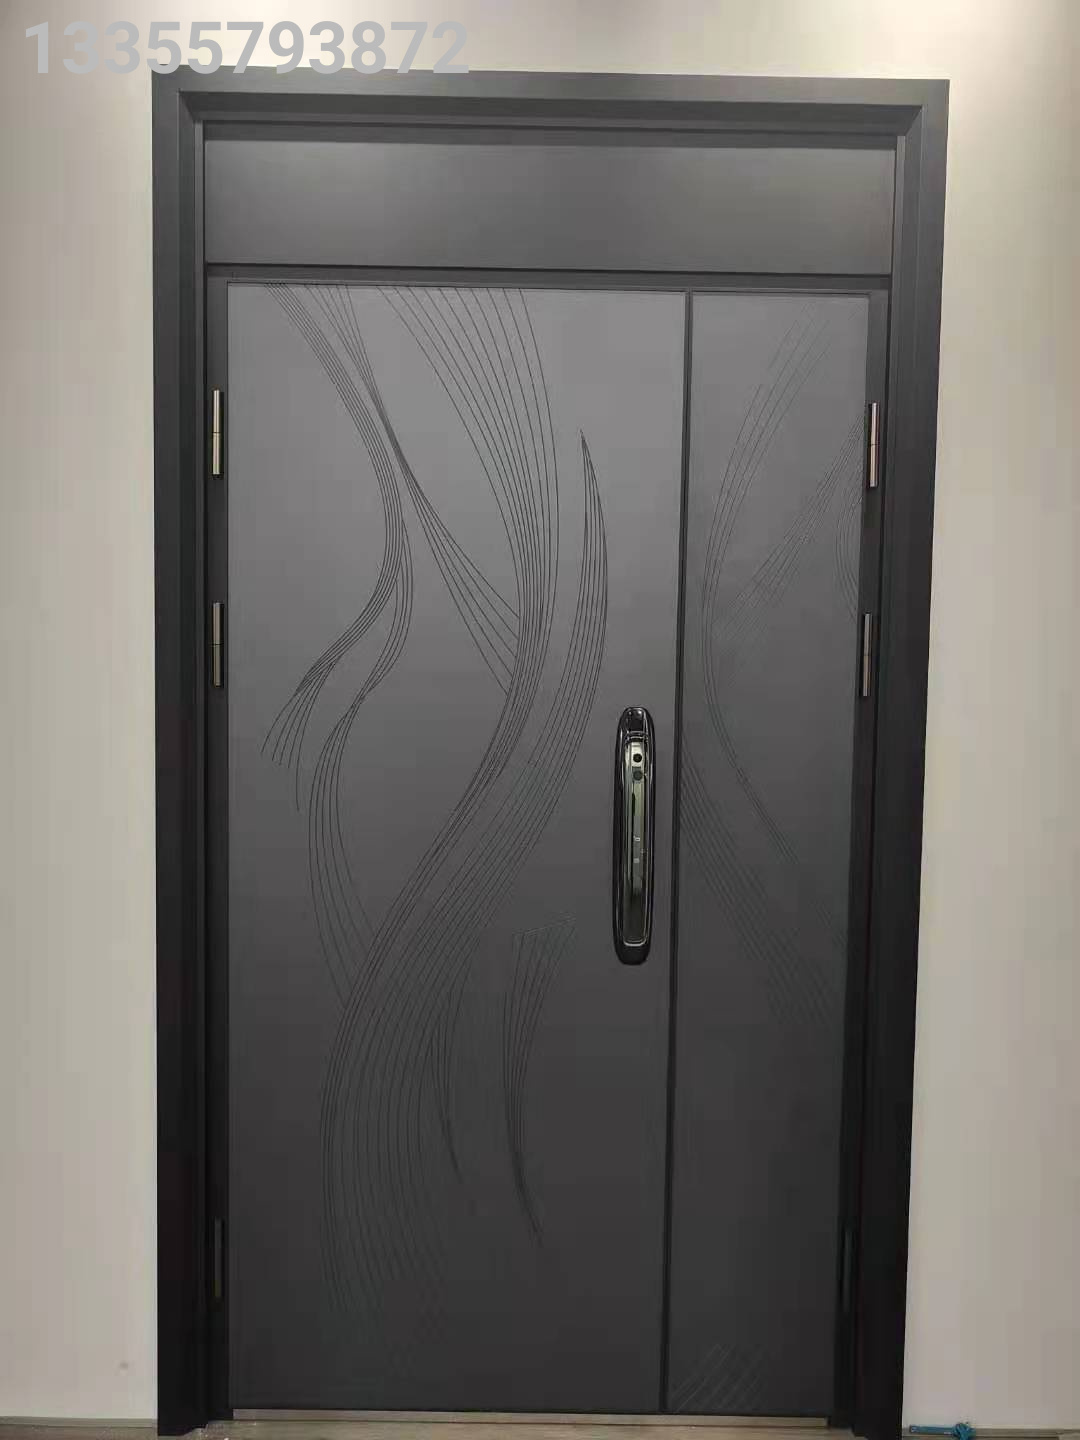 Cast Aluminum Door Class A Anti-Theft Door Household Entrance Door Smart Lock Door Steel Safety Door